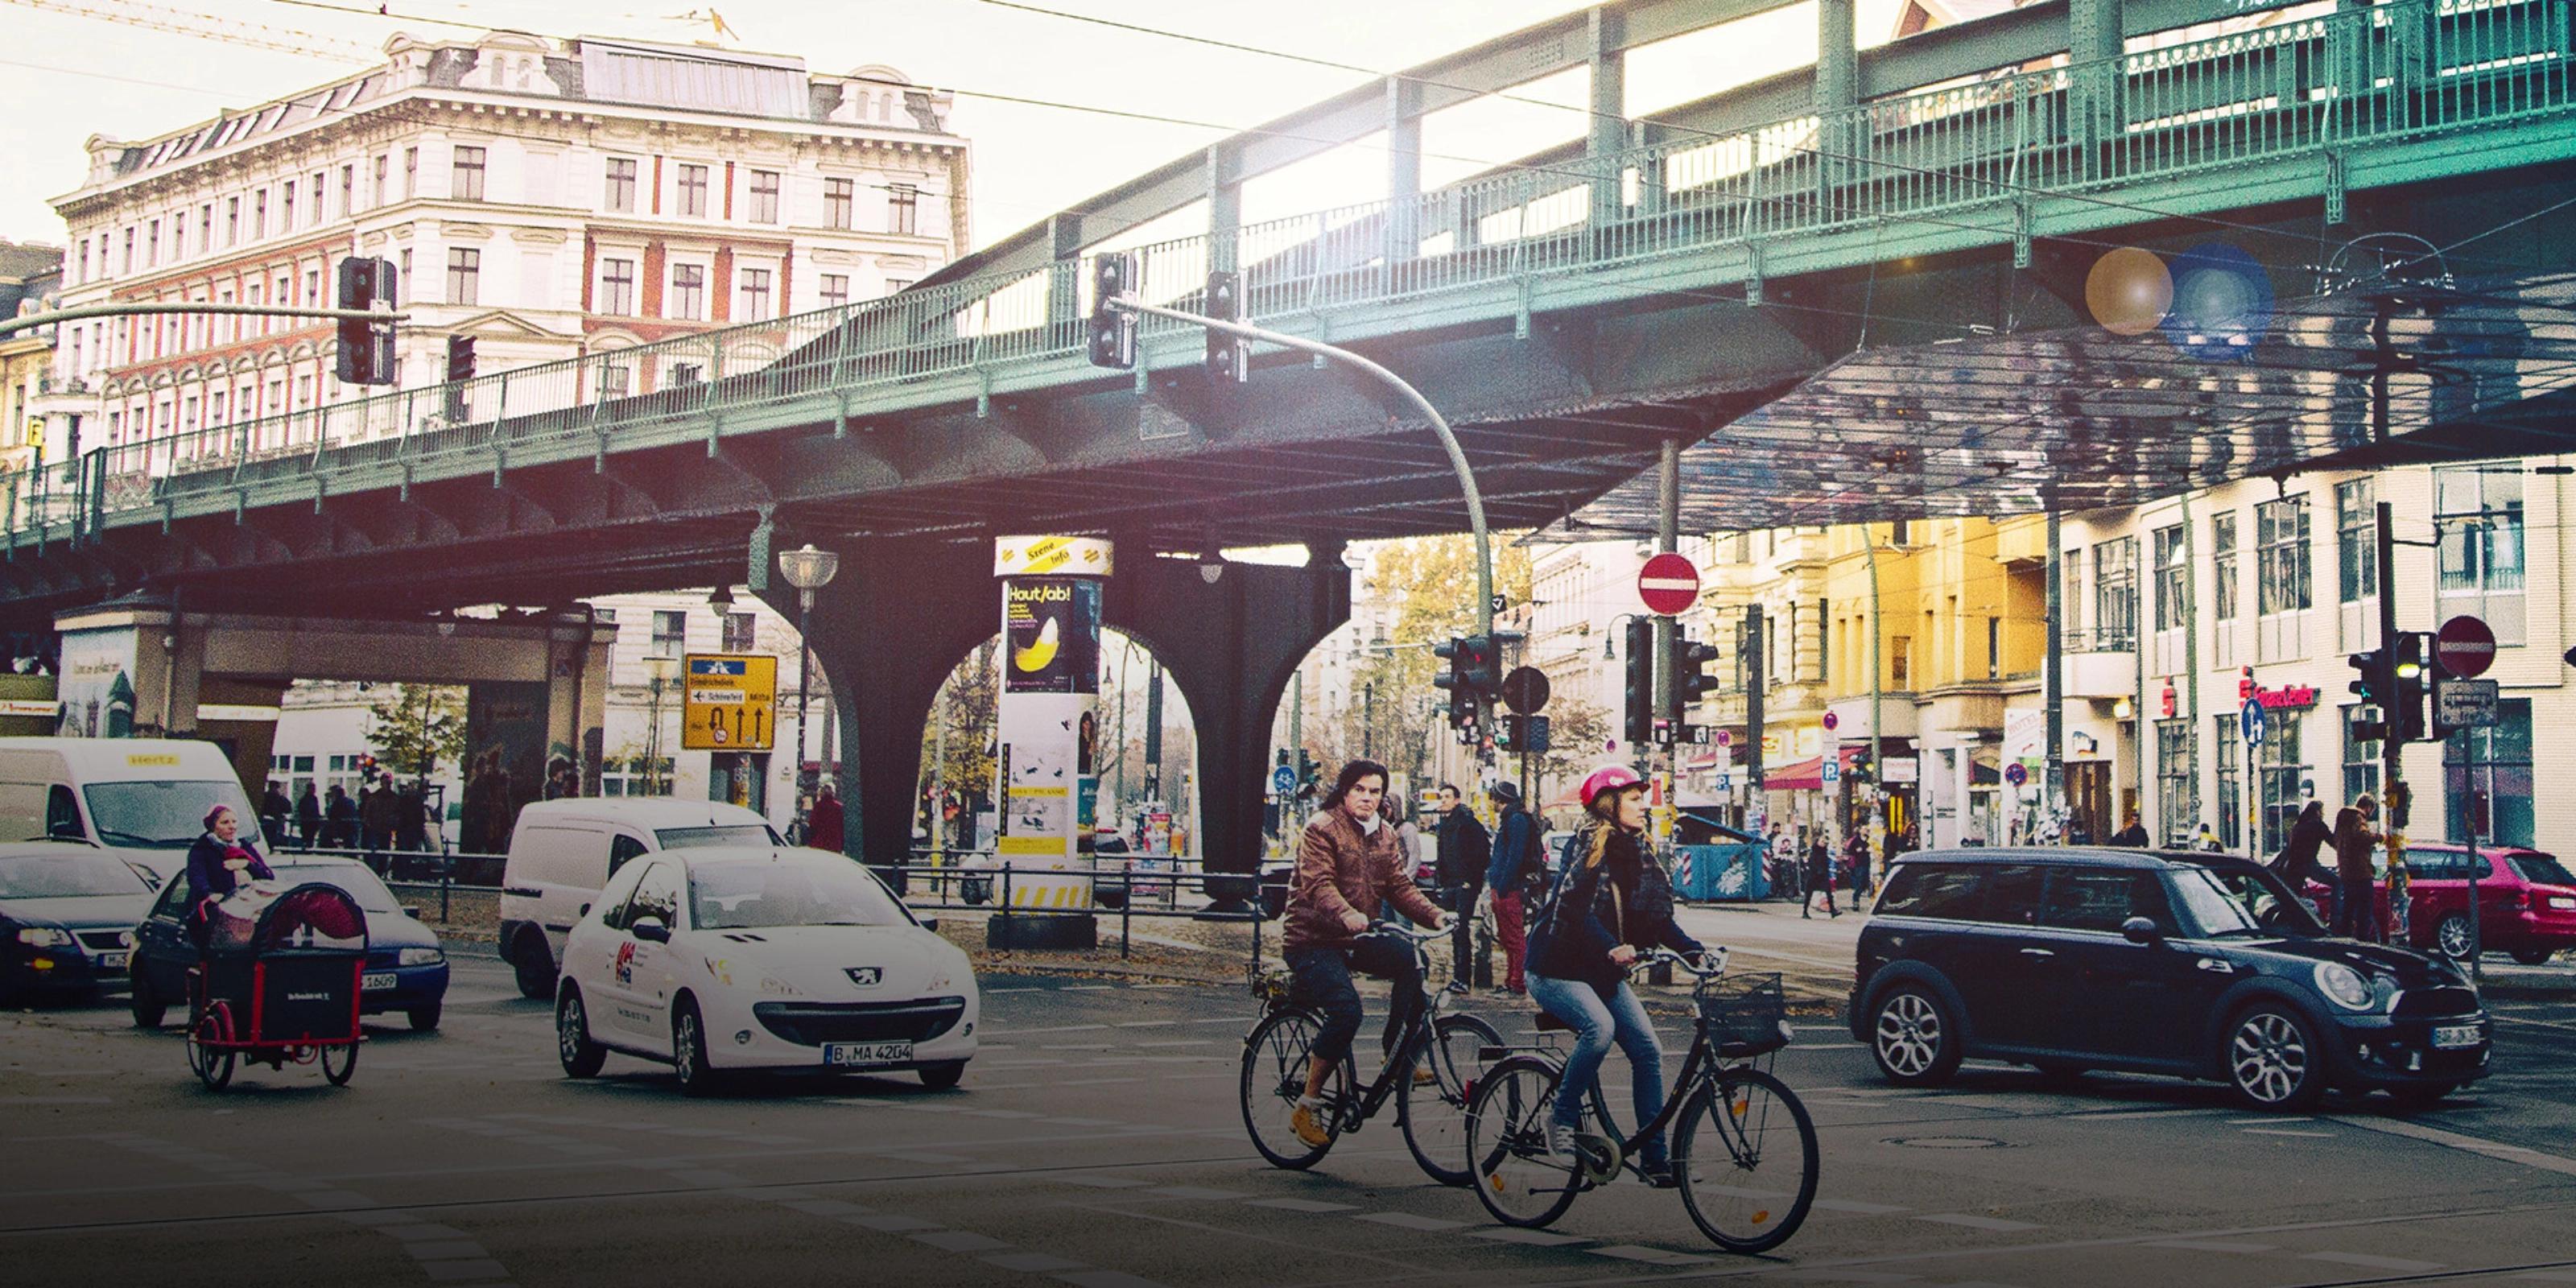 Verkehrskreuzung in Berlin mit Radfahrern und Autos